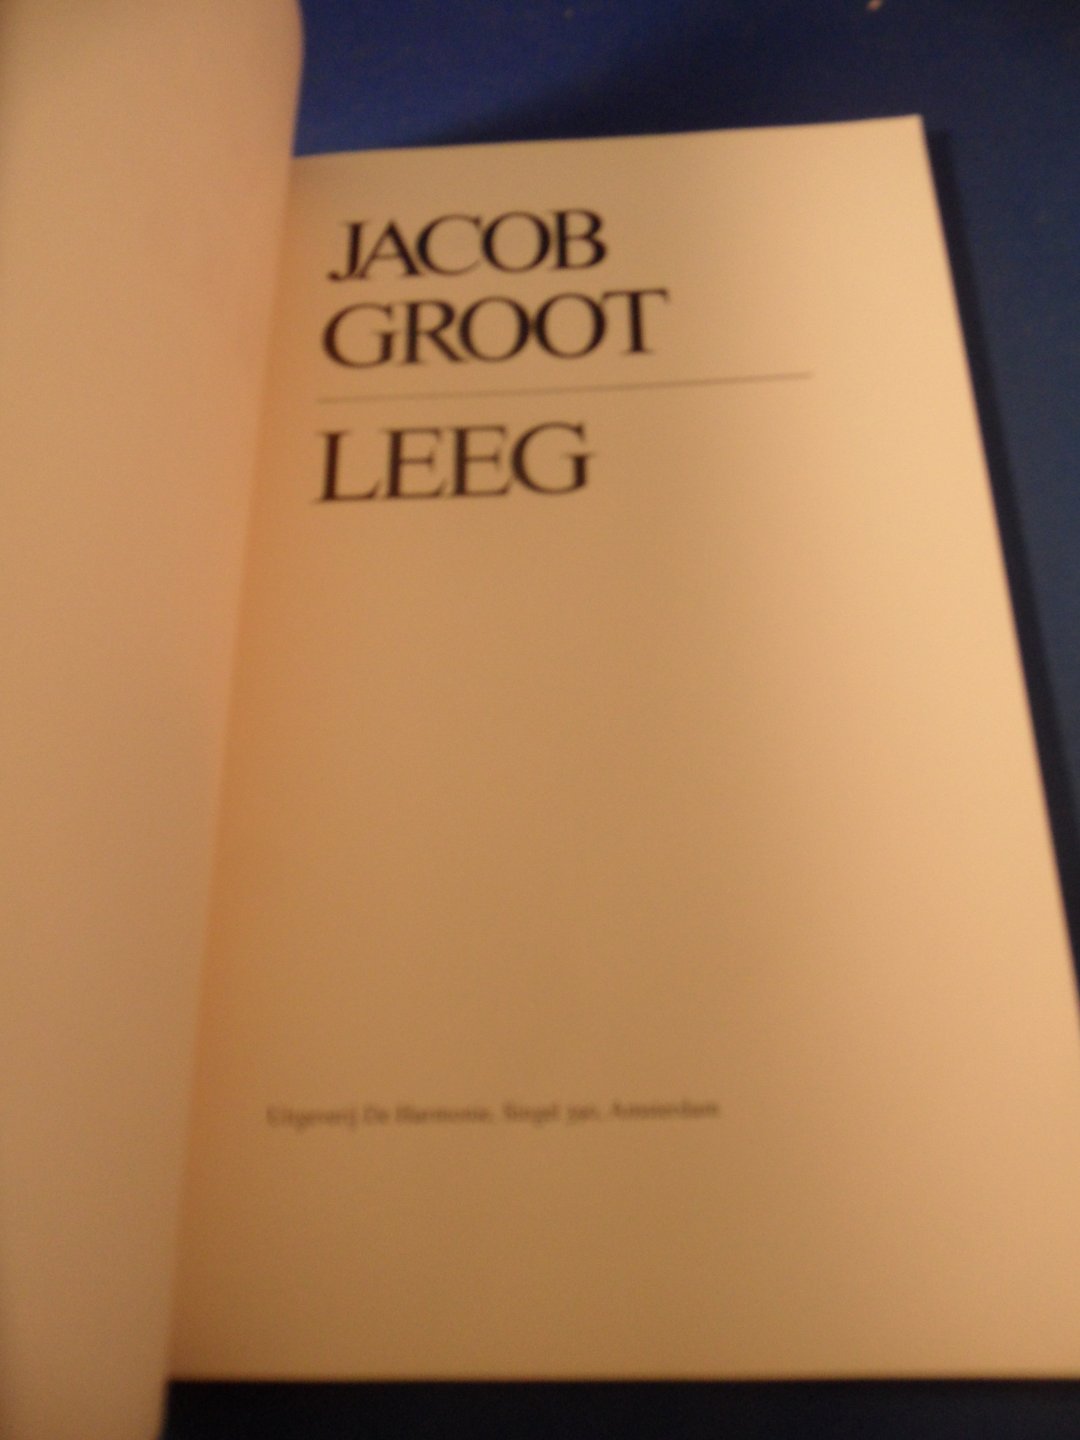 Groot, Jacob - Leeg